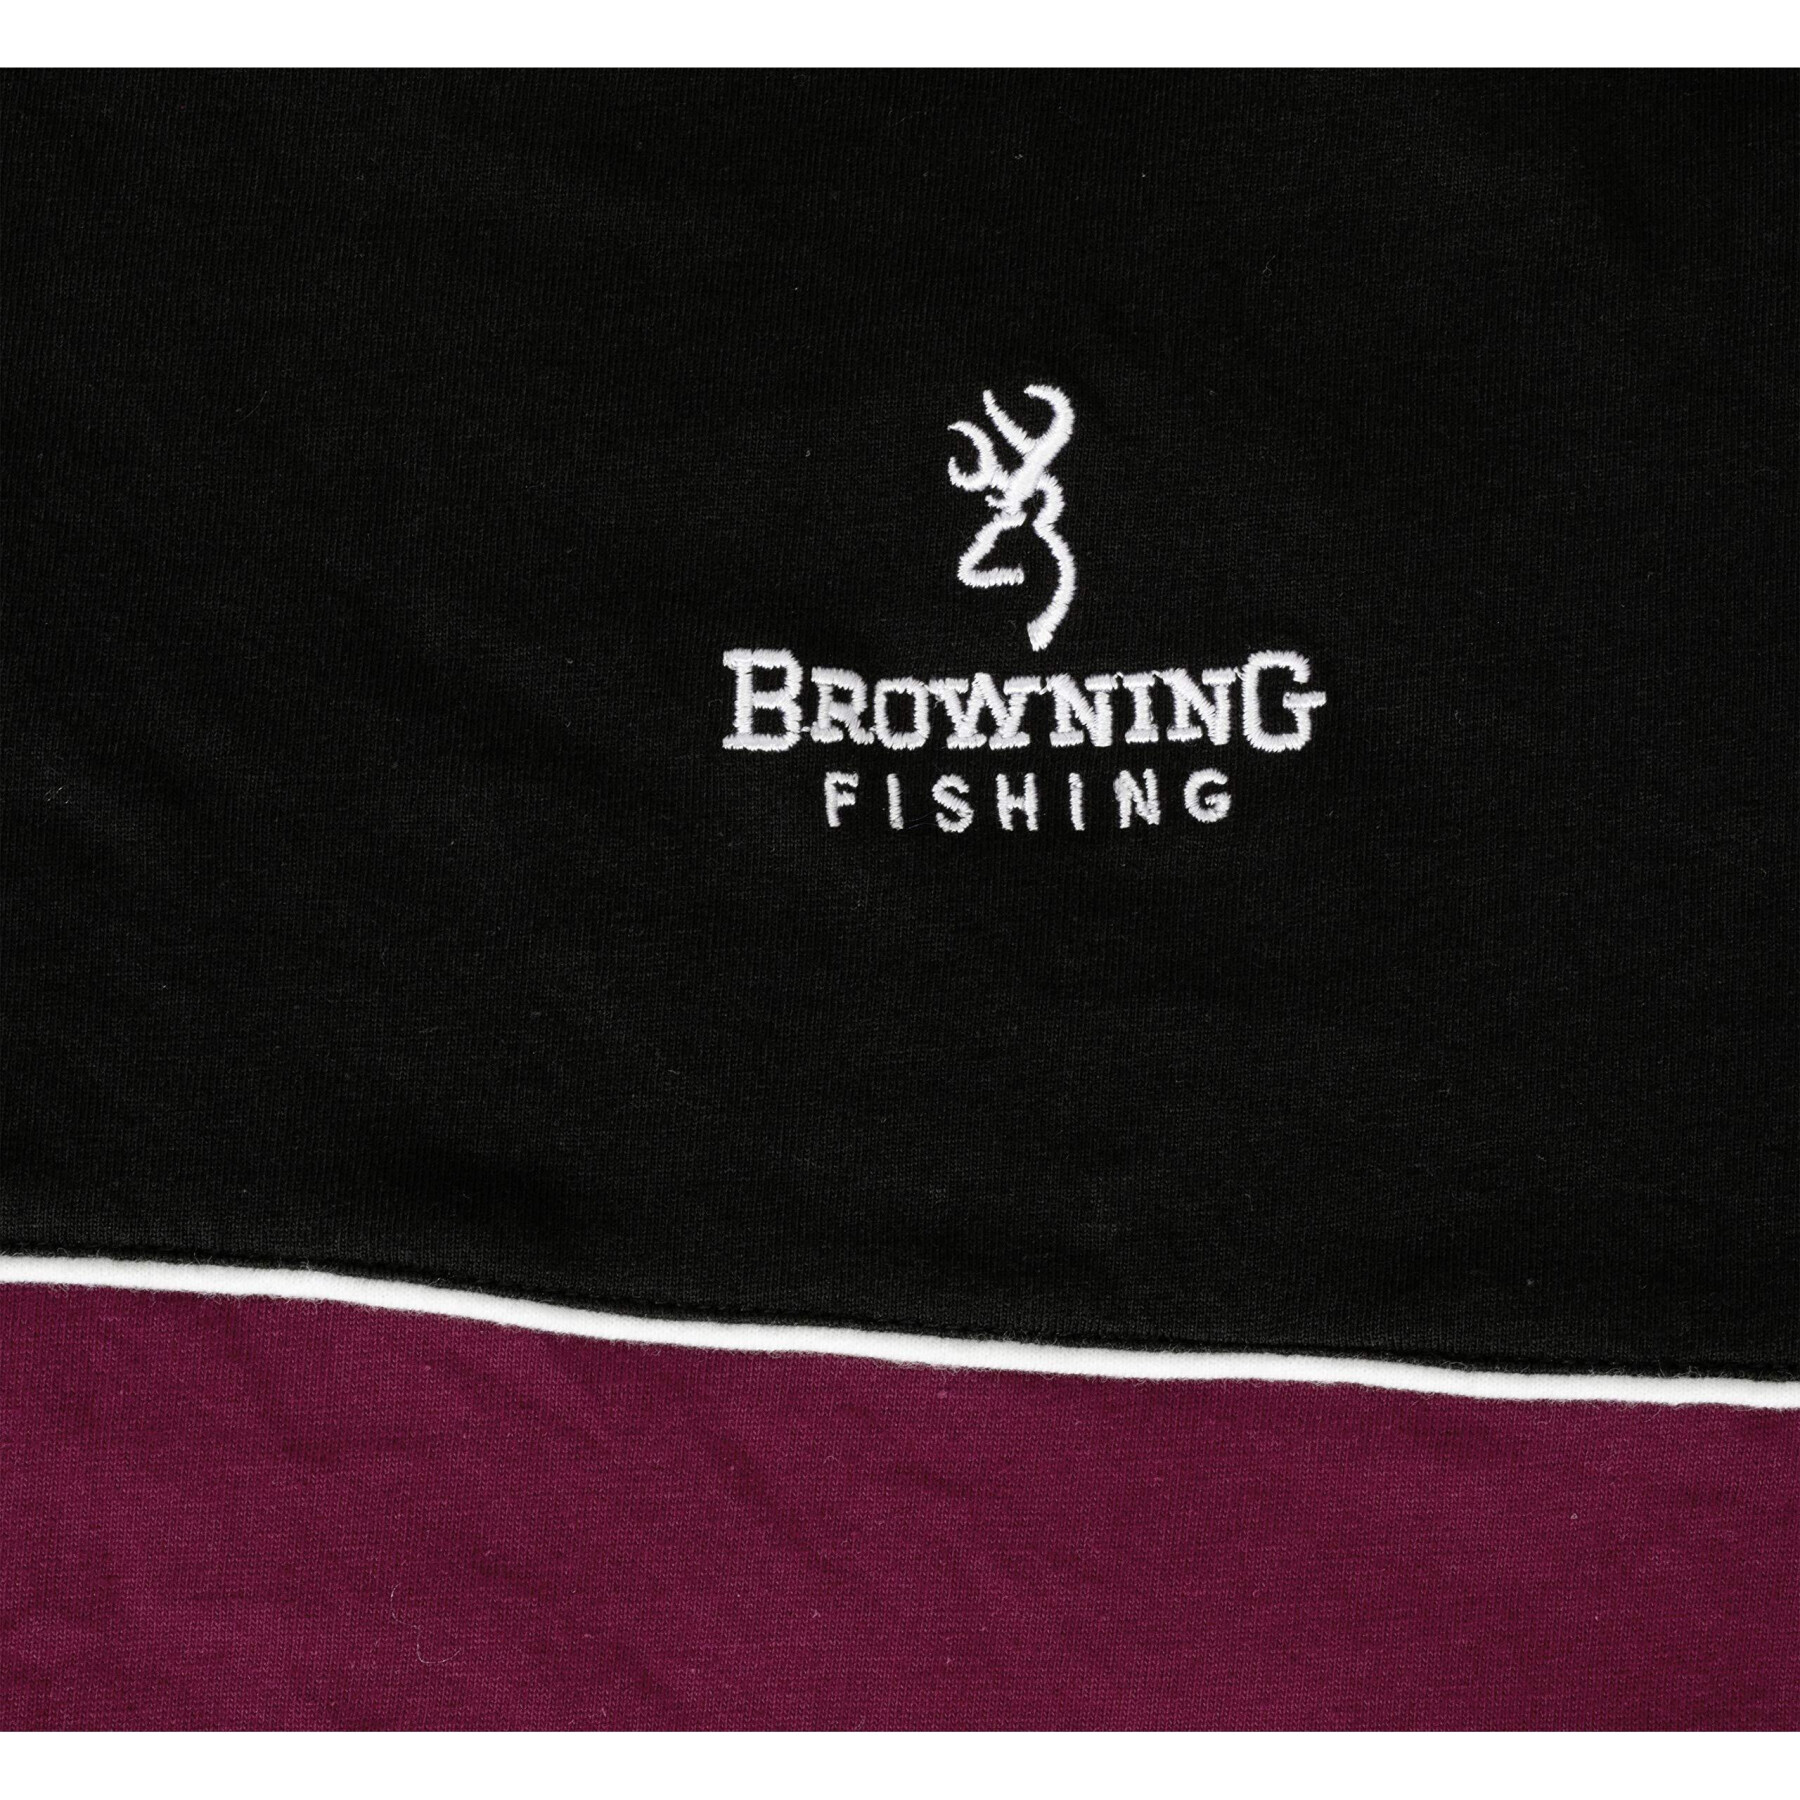 Camiseta Browning